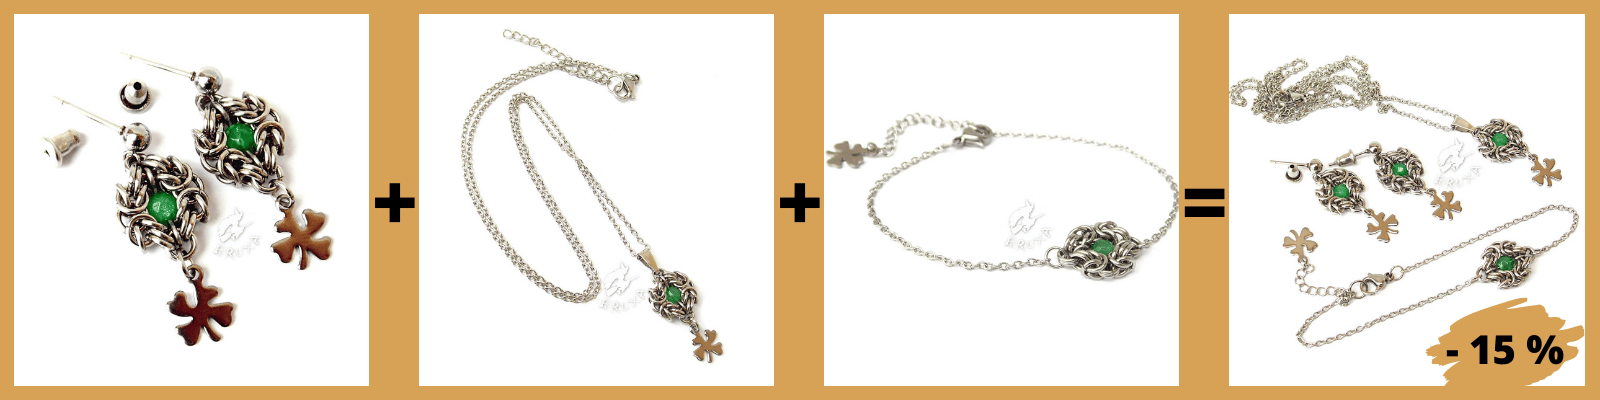 Kolczyki+naszyjnik+bransoletka=zestaw biżuterii Anastazja z zielonym jadeitem 15% taniej